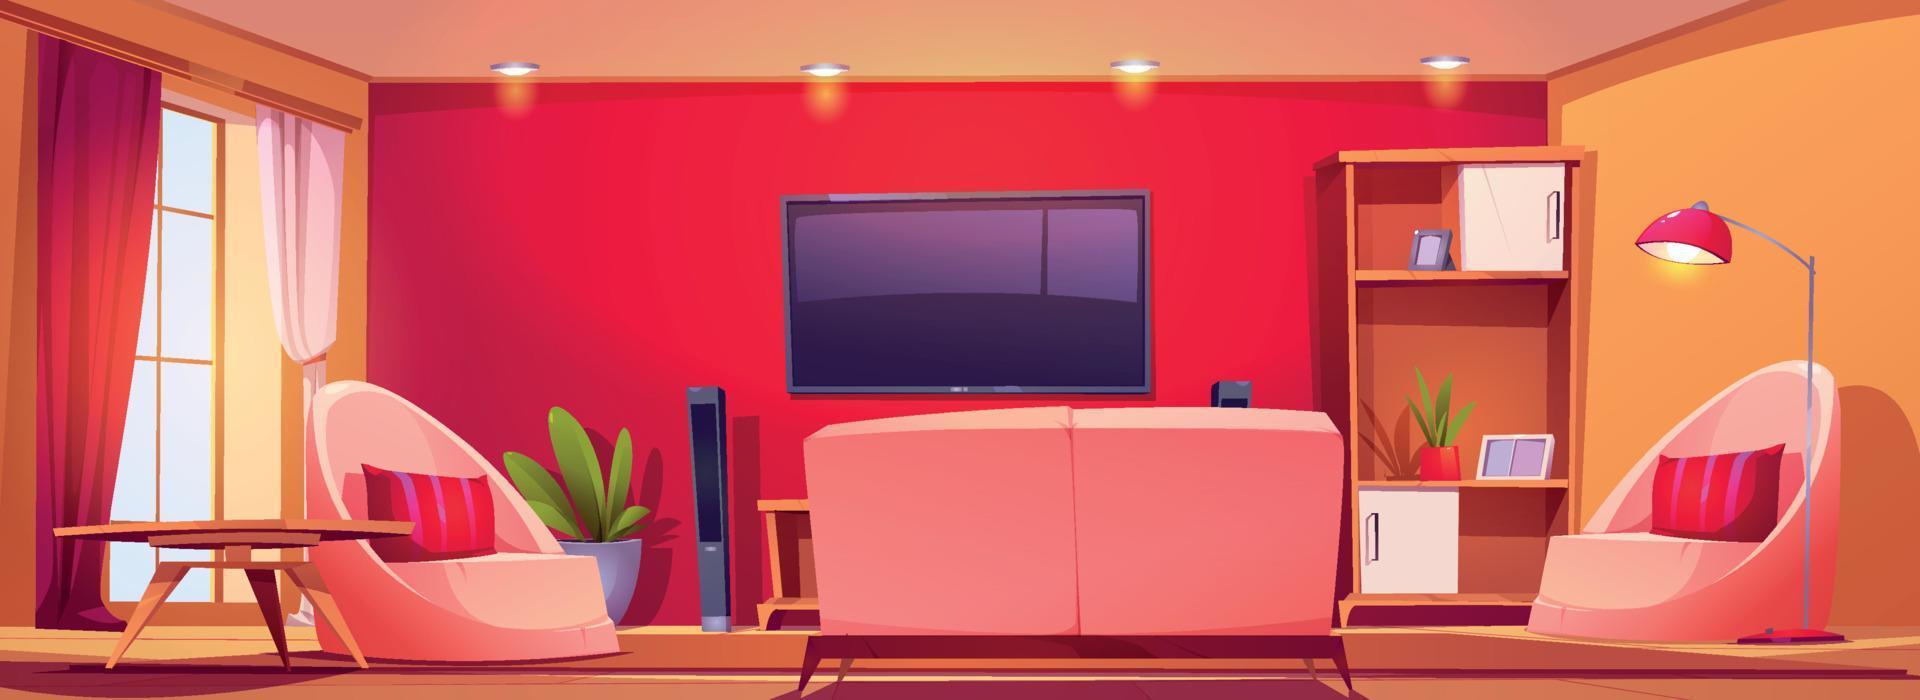 leven kamer interieur met rood muur, TV en bankstel vector